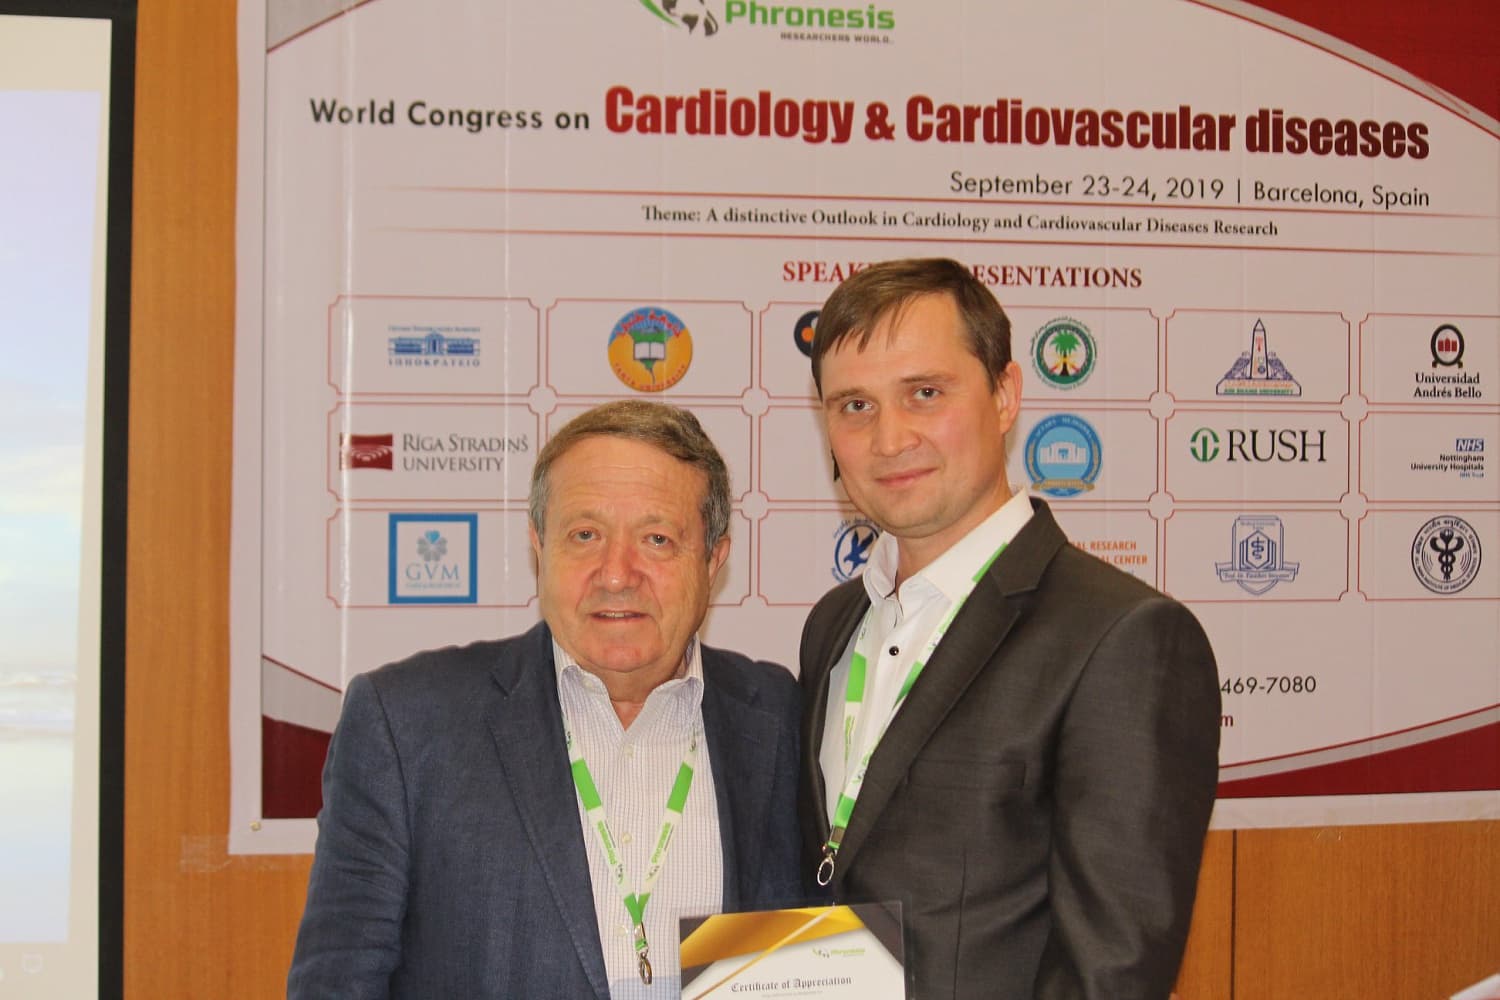 23 и 24 сентября 2019 года в городе Барселона проходил «Мировой конгресс кардиологов и сердечно-сосудистых хирургов», посвященный проблемам диагностики и лечения сердечно-сосудистых заболеваний